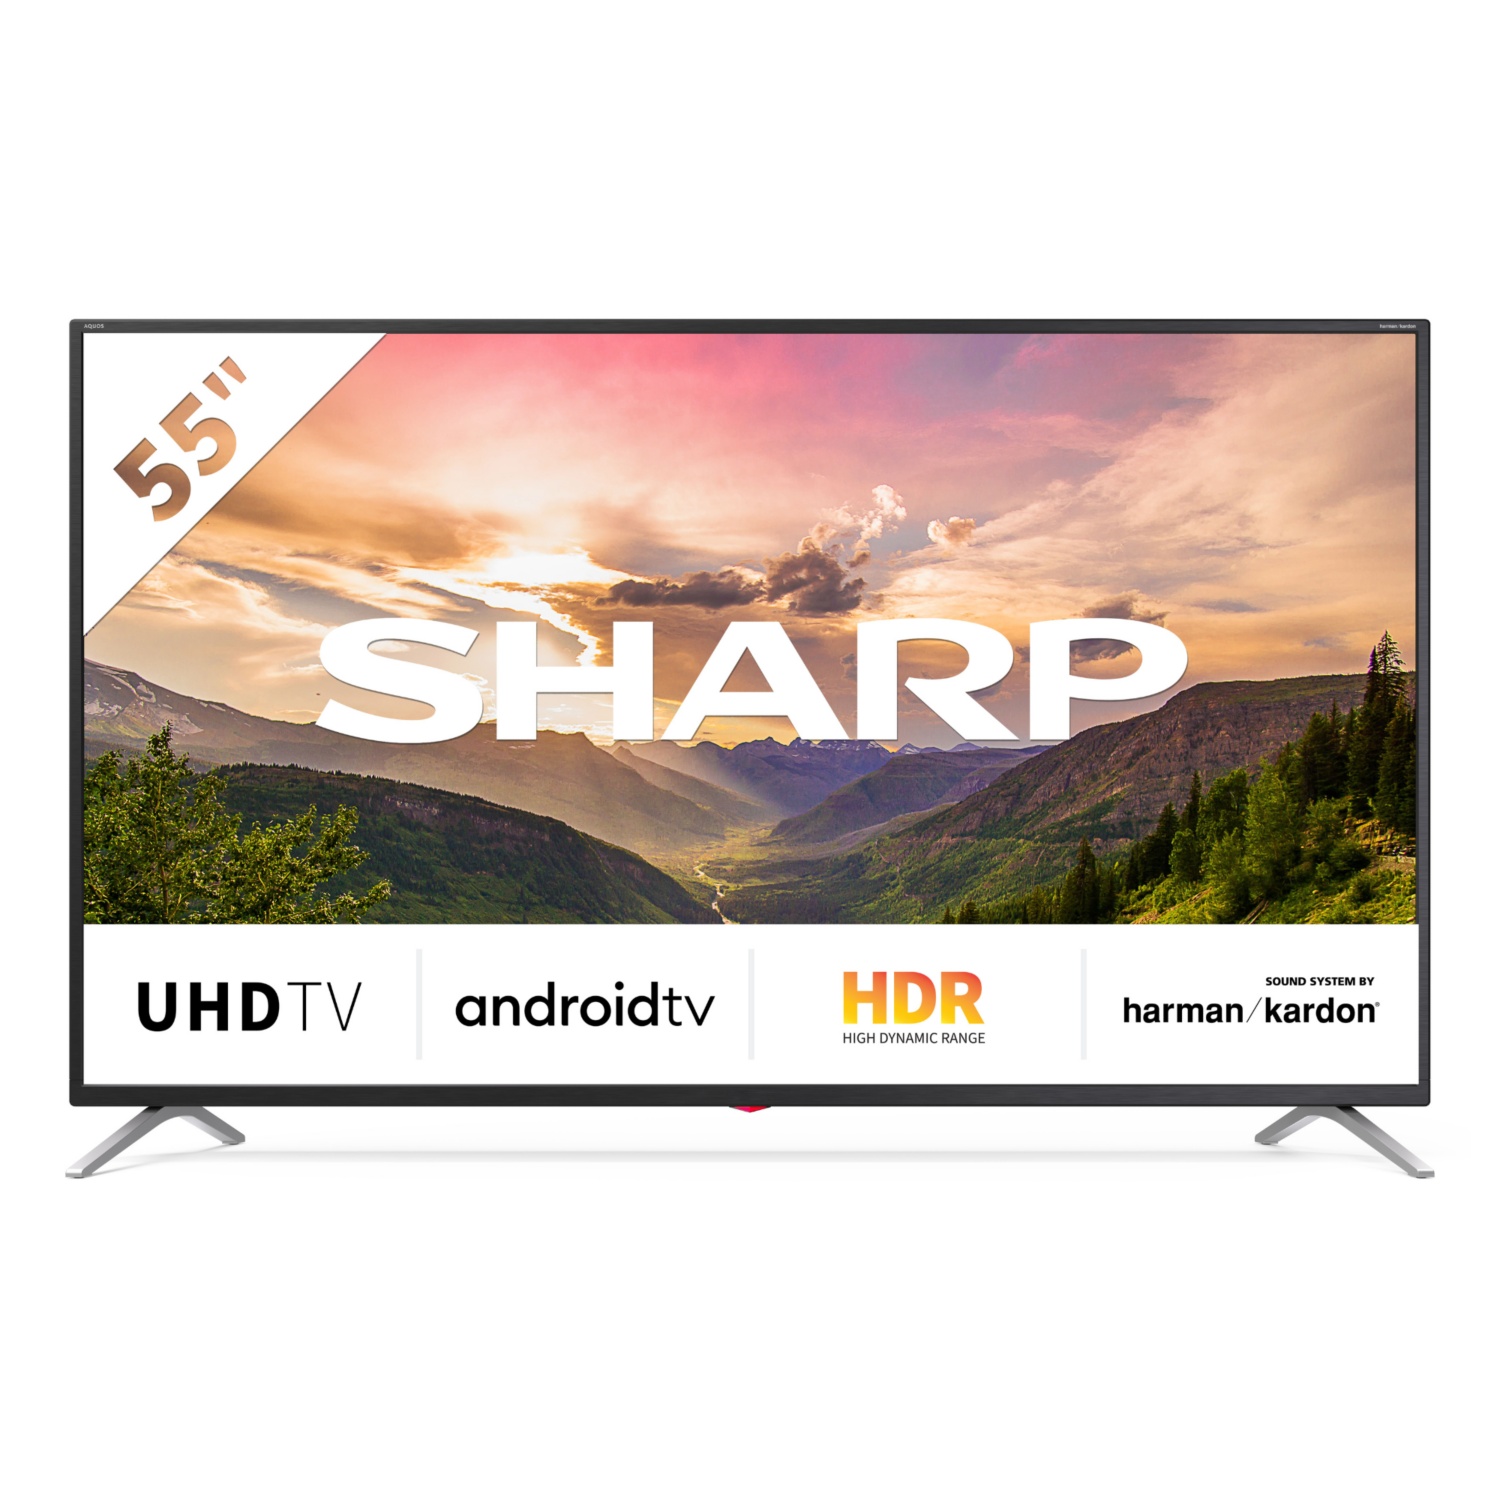 SHARP Pametni 4K UHD-televizor Android, 139-cm (55")